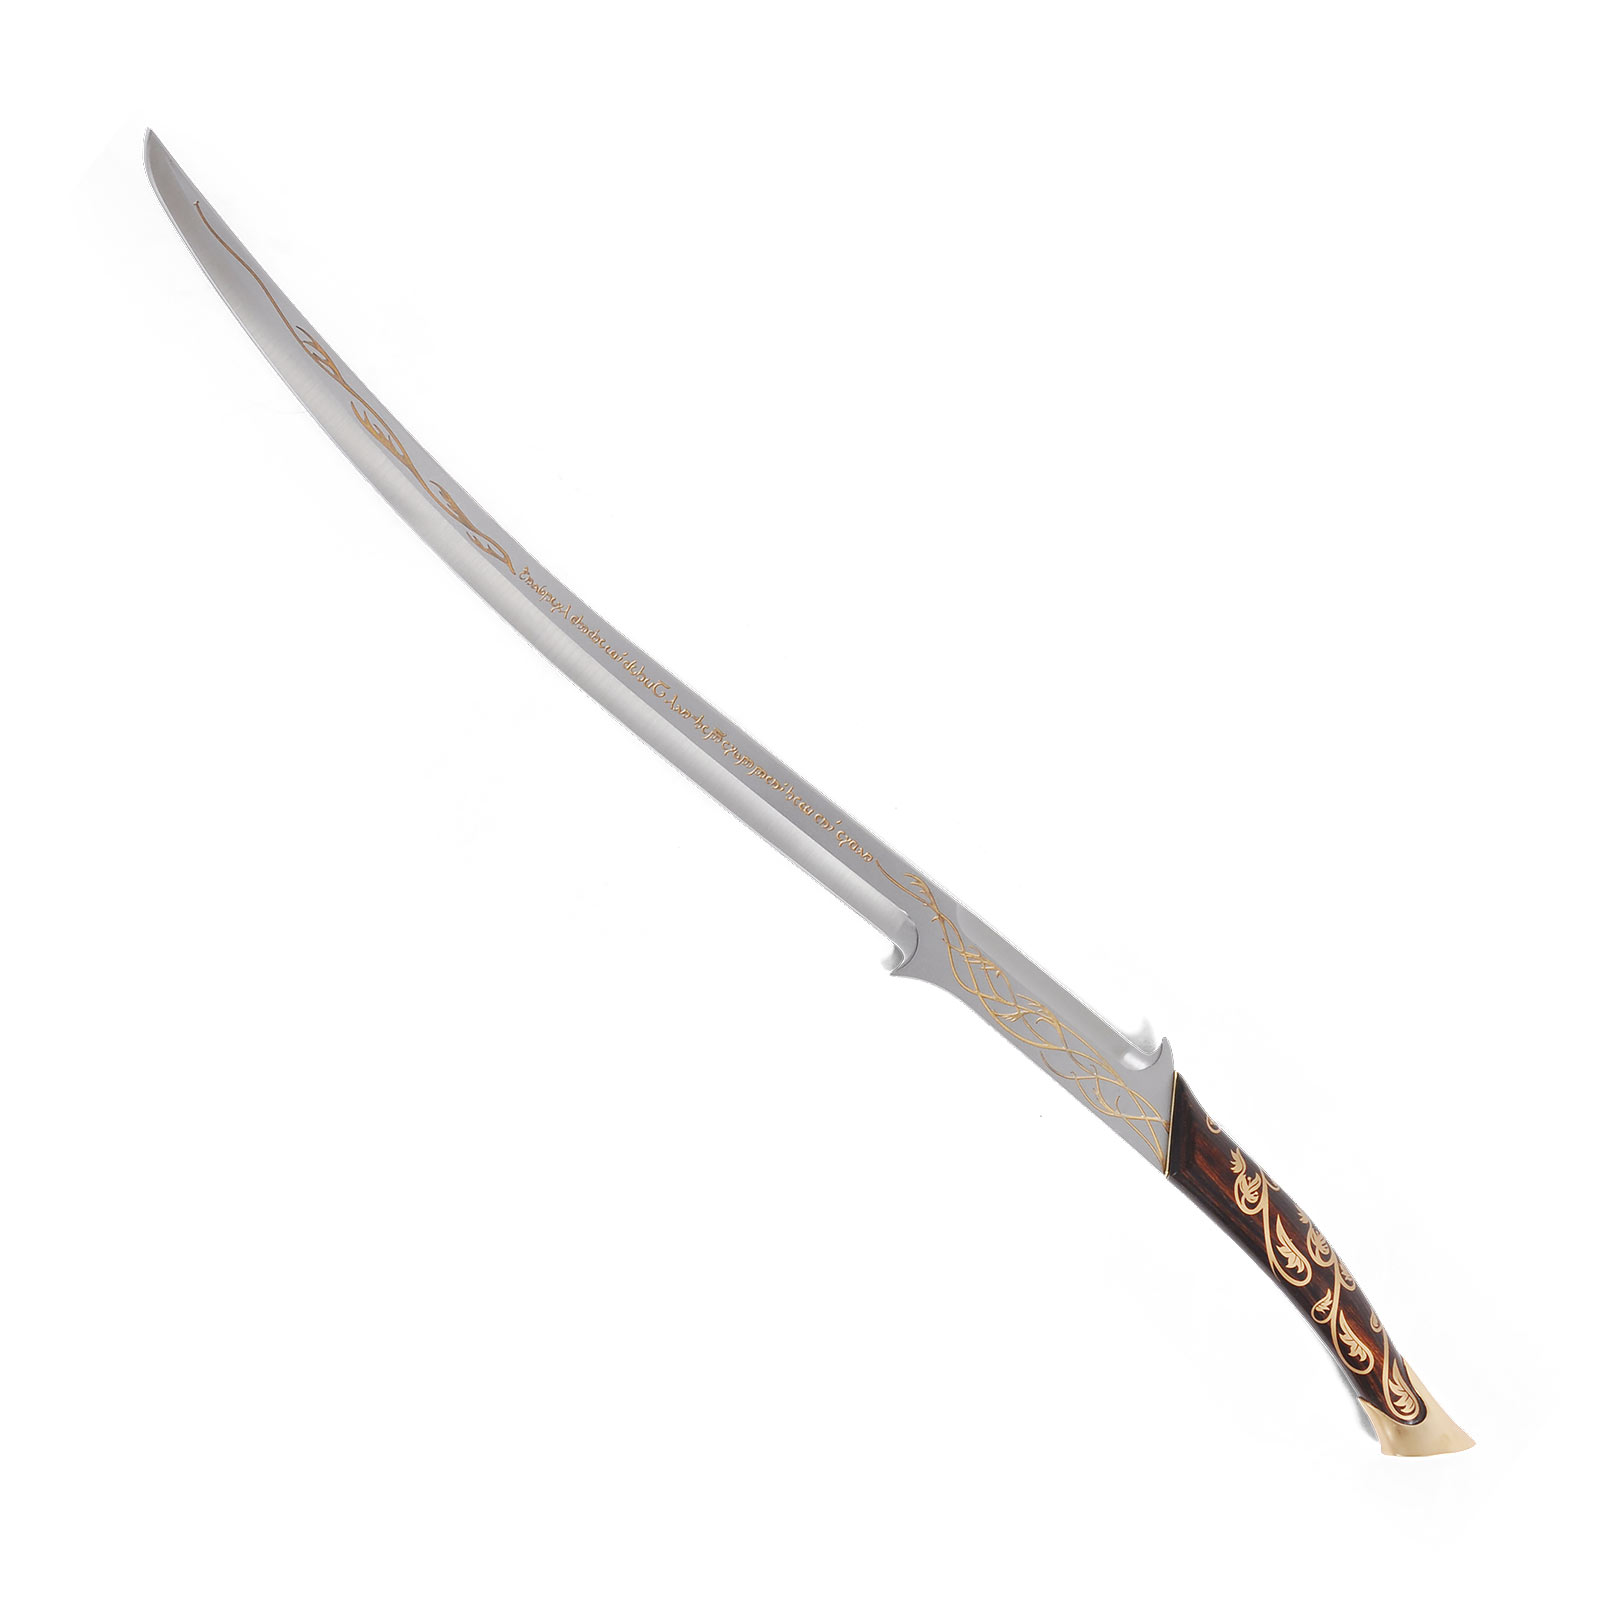 Sword Hadhafang - Arwen's Sword